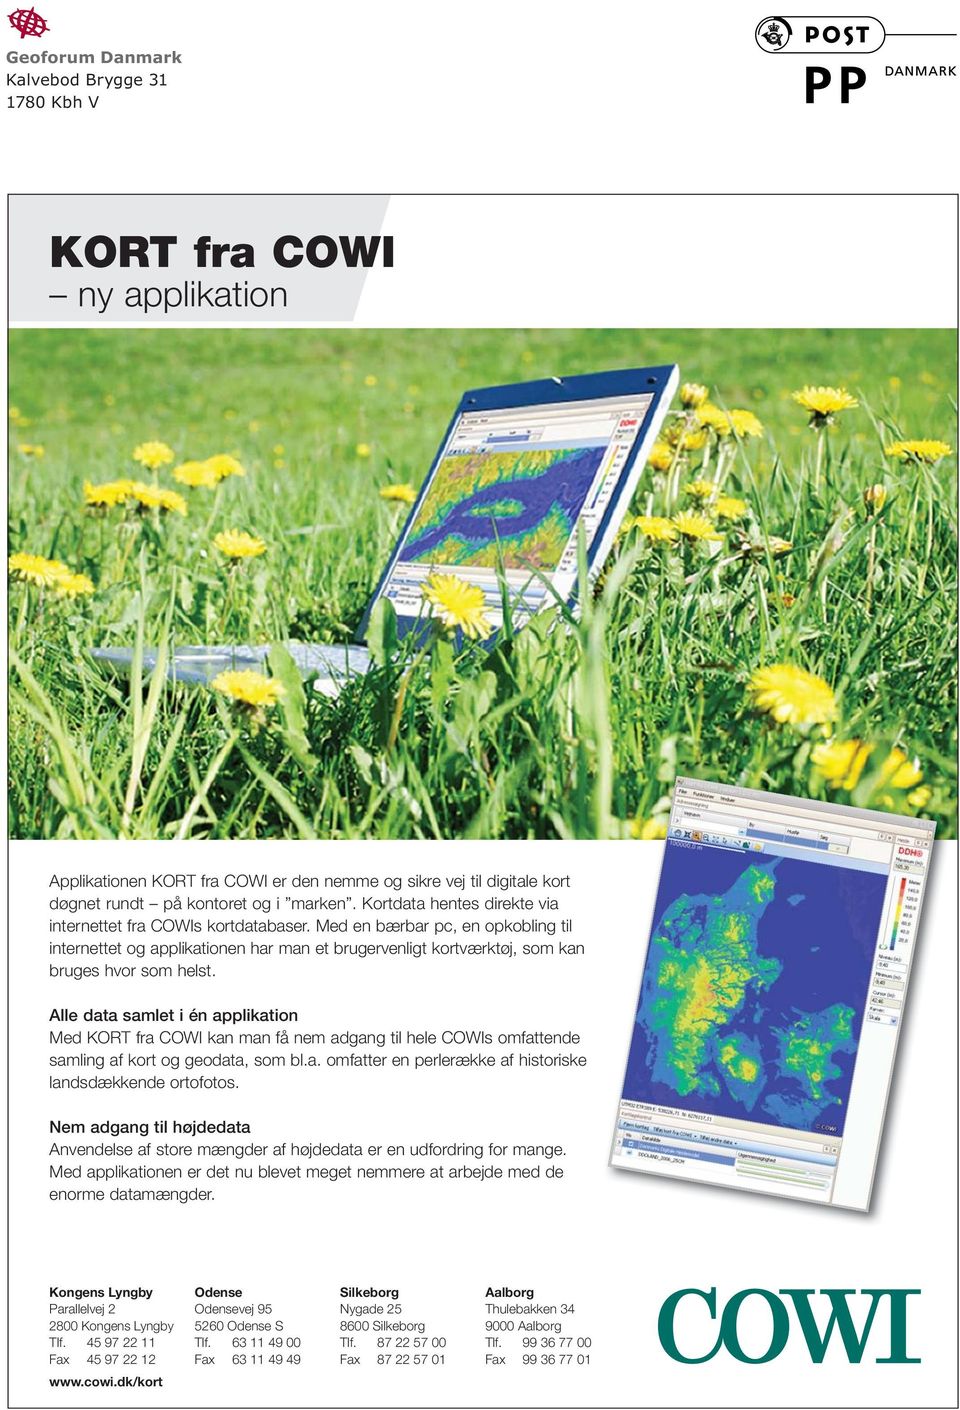 Alle data samlet i én applikation Med KORT fra COWI kan man få nem adgang til hele COWIs omfattende samling af kort og geodata, som bl.a. omfatter en perlerække af historiske landsdækkende ortofotos.